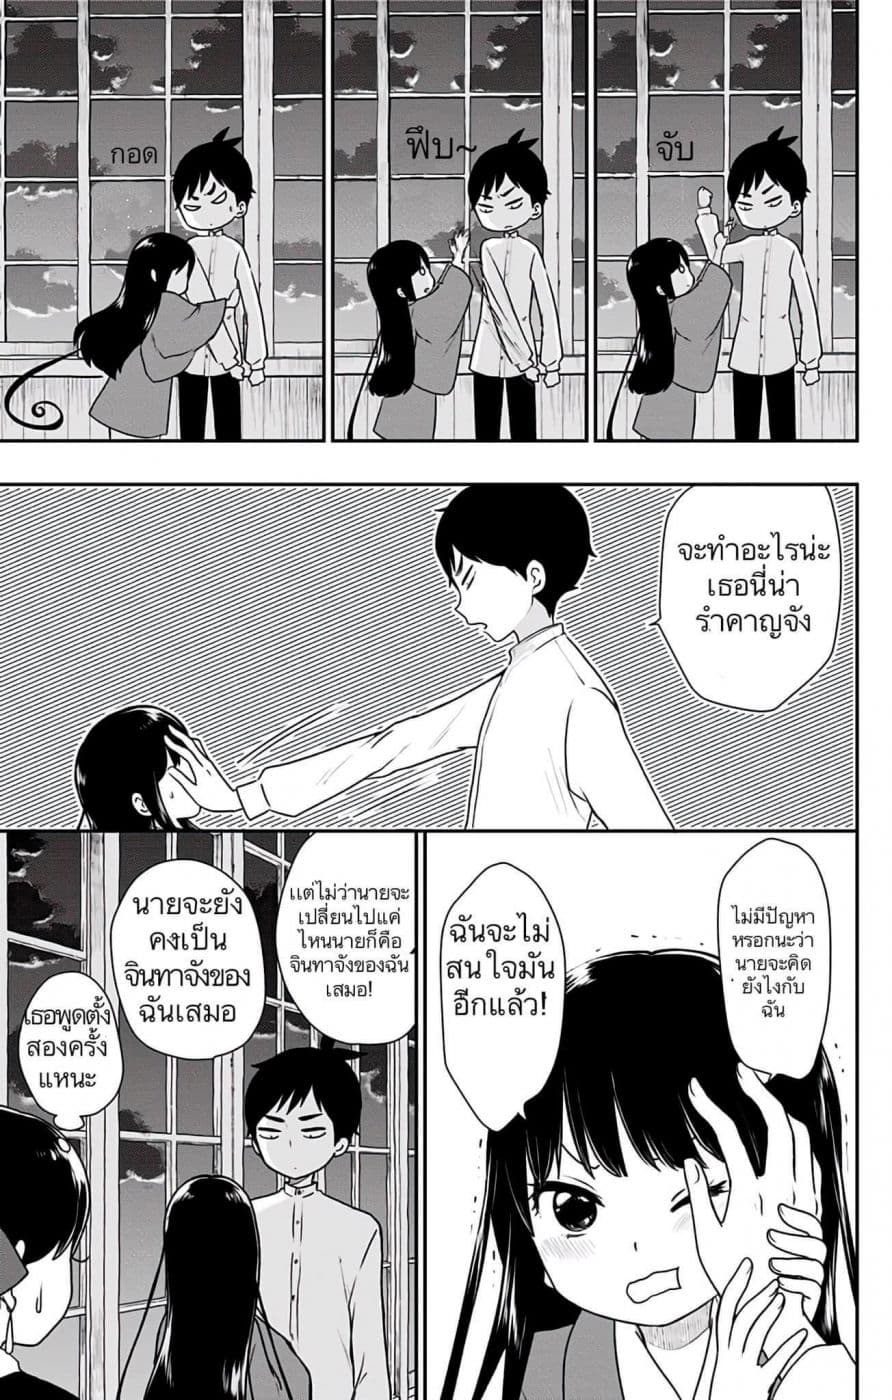 Shouwa Otome Otogibanashi เรื่องเล่าของสาวน้อย ยุคโชวะ ตอนที่ 5 (11)